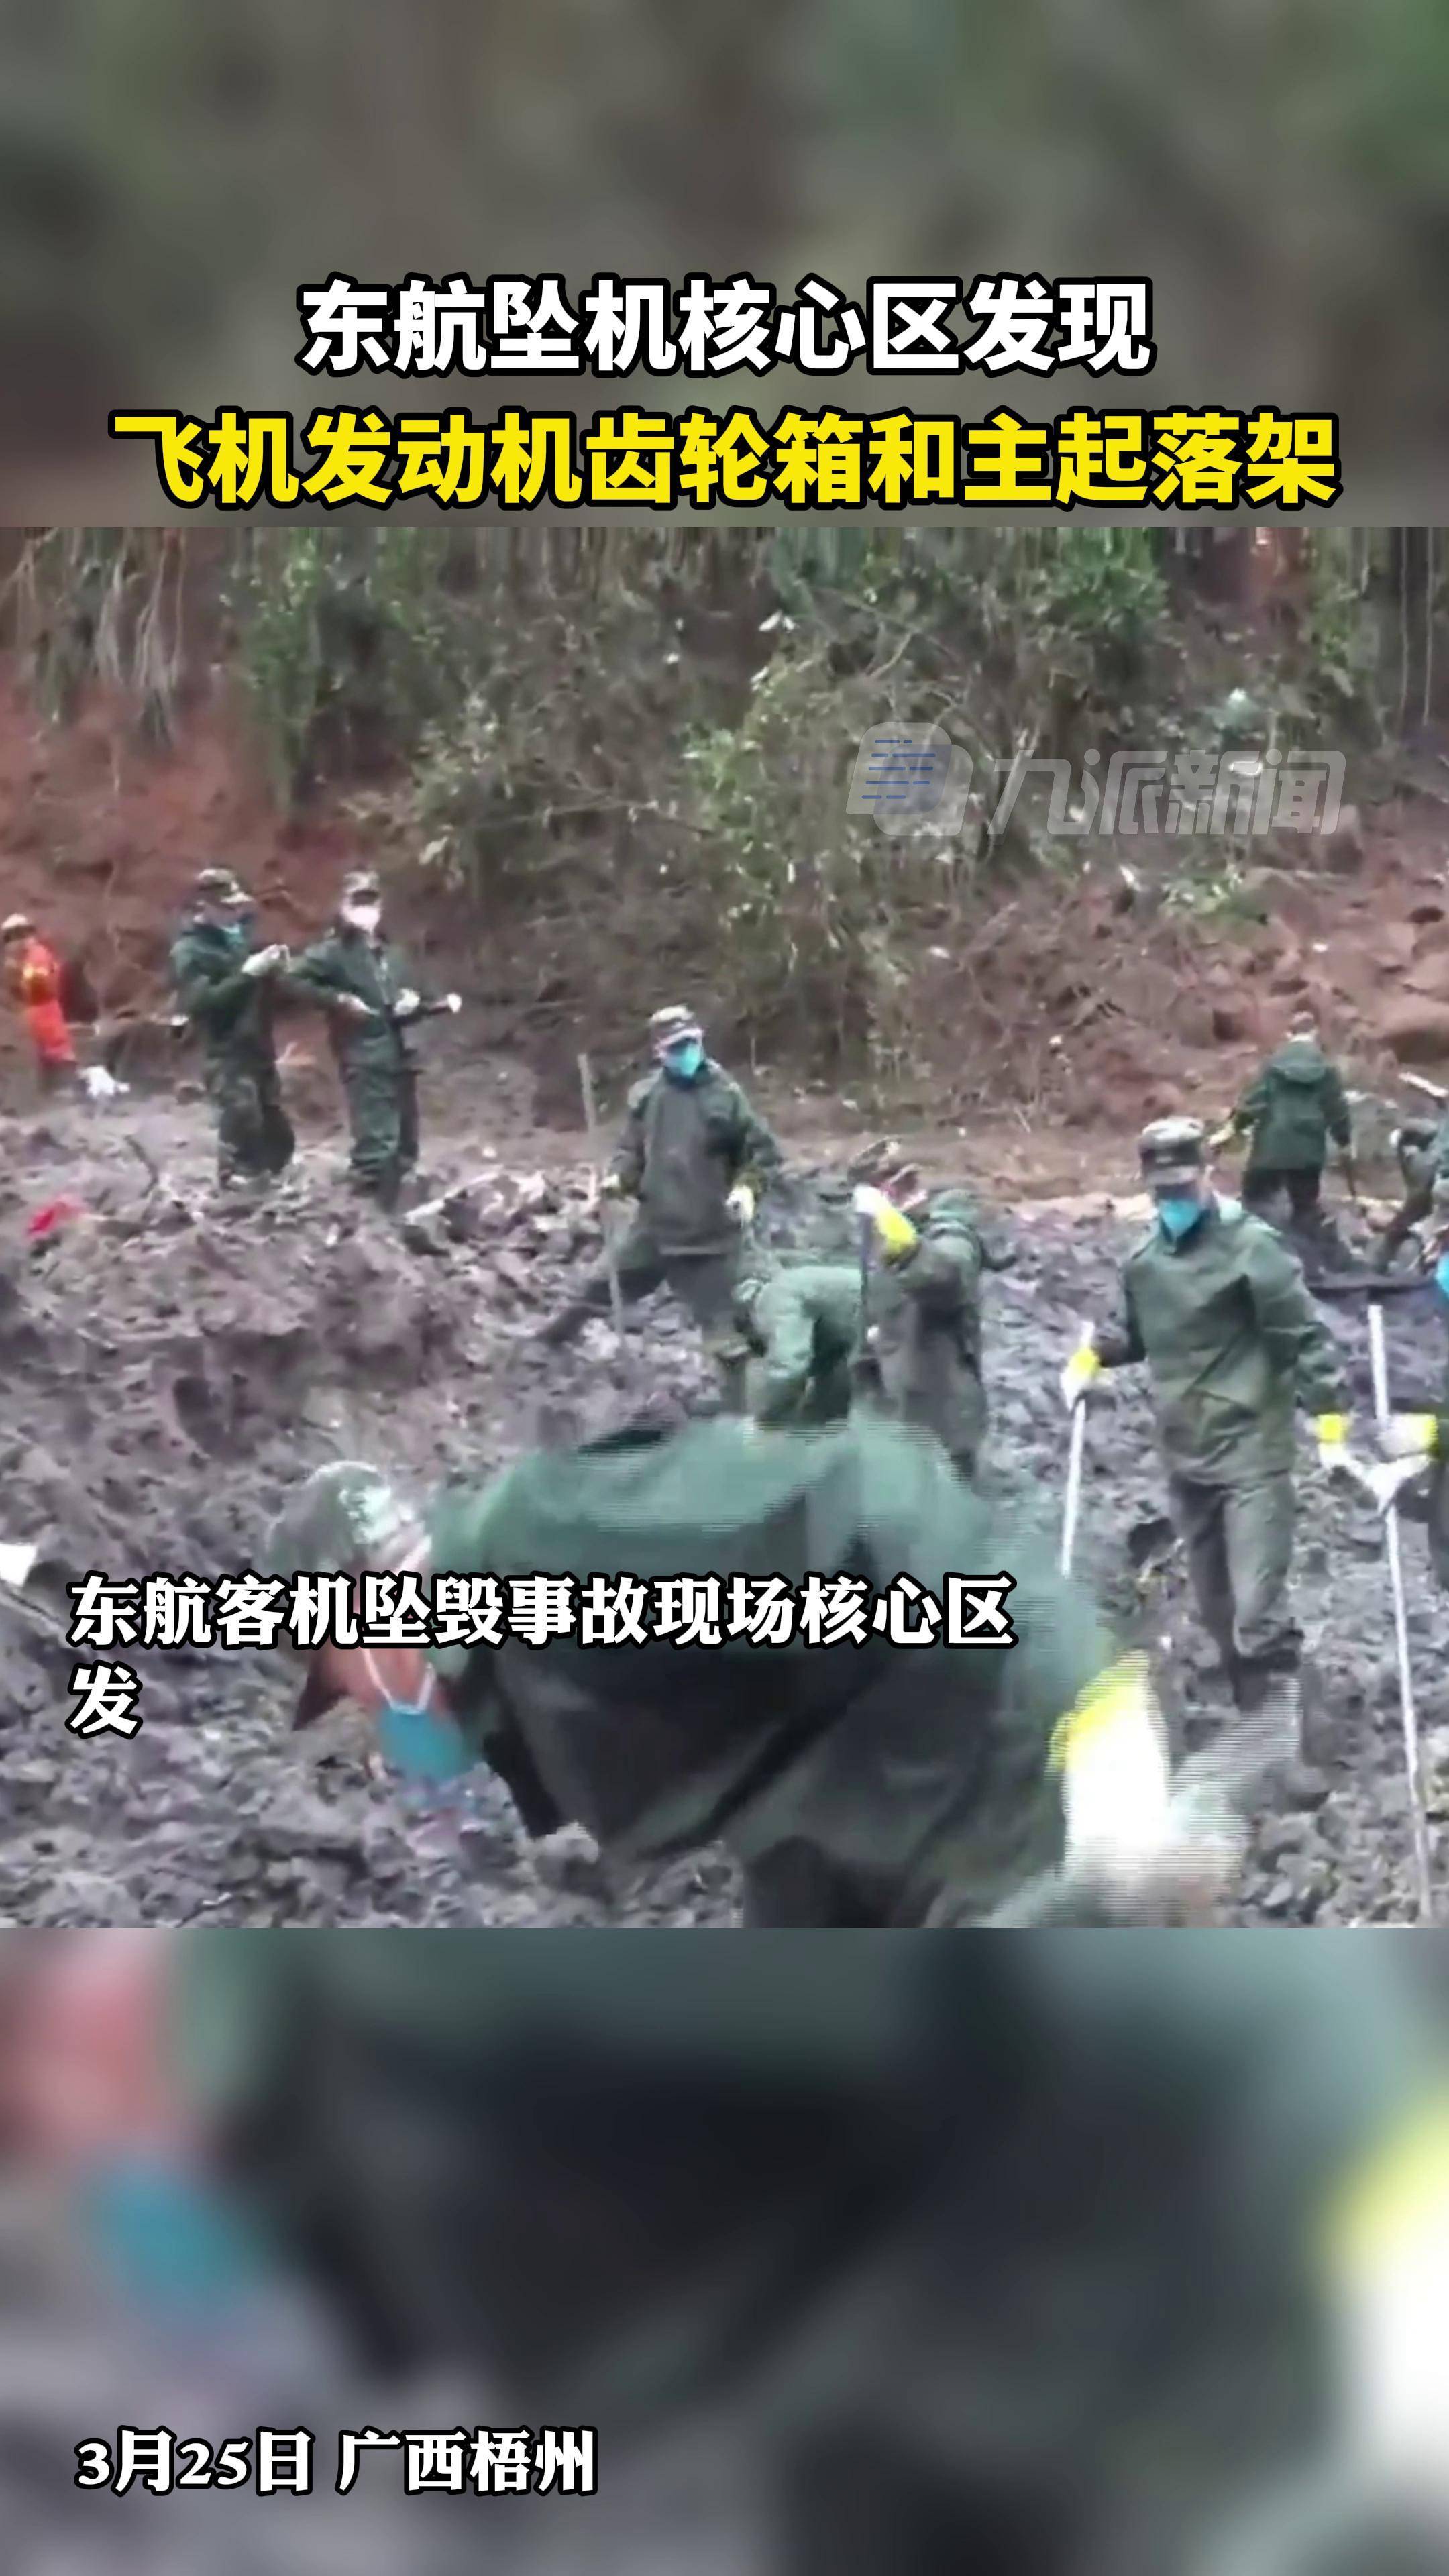 3月25日广西梧州东航坠机核心区发现飞机发动机齿轮箱和主起落架